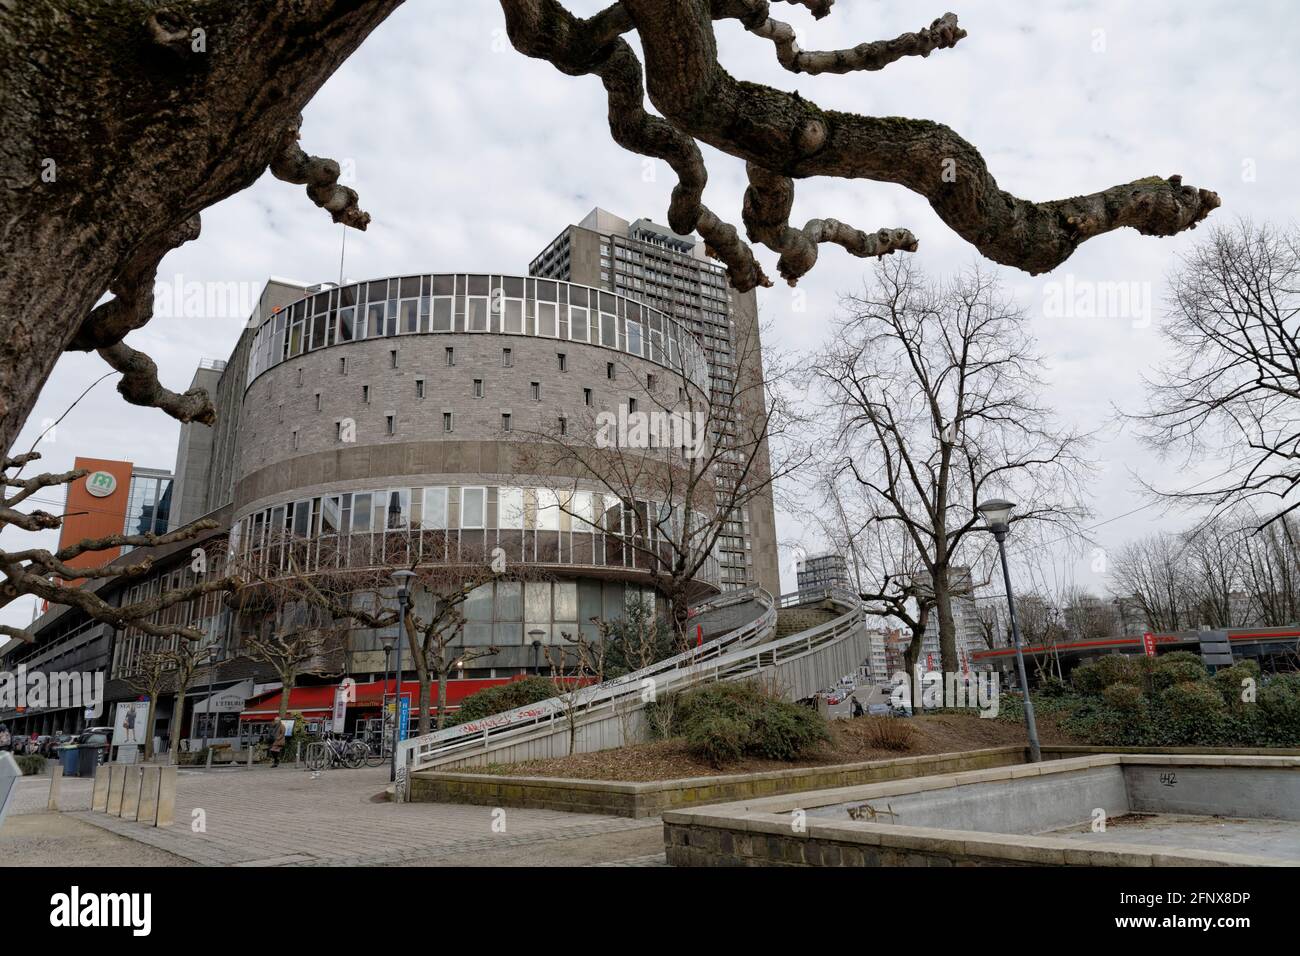 Place des Carmes, La Bibliothèque Chiroux Liège, Belgique Stock Photo -  Alamy